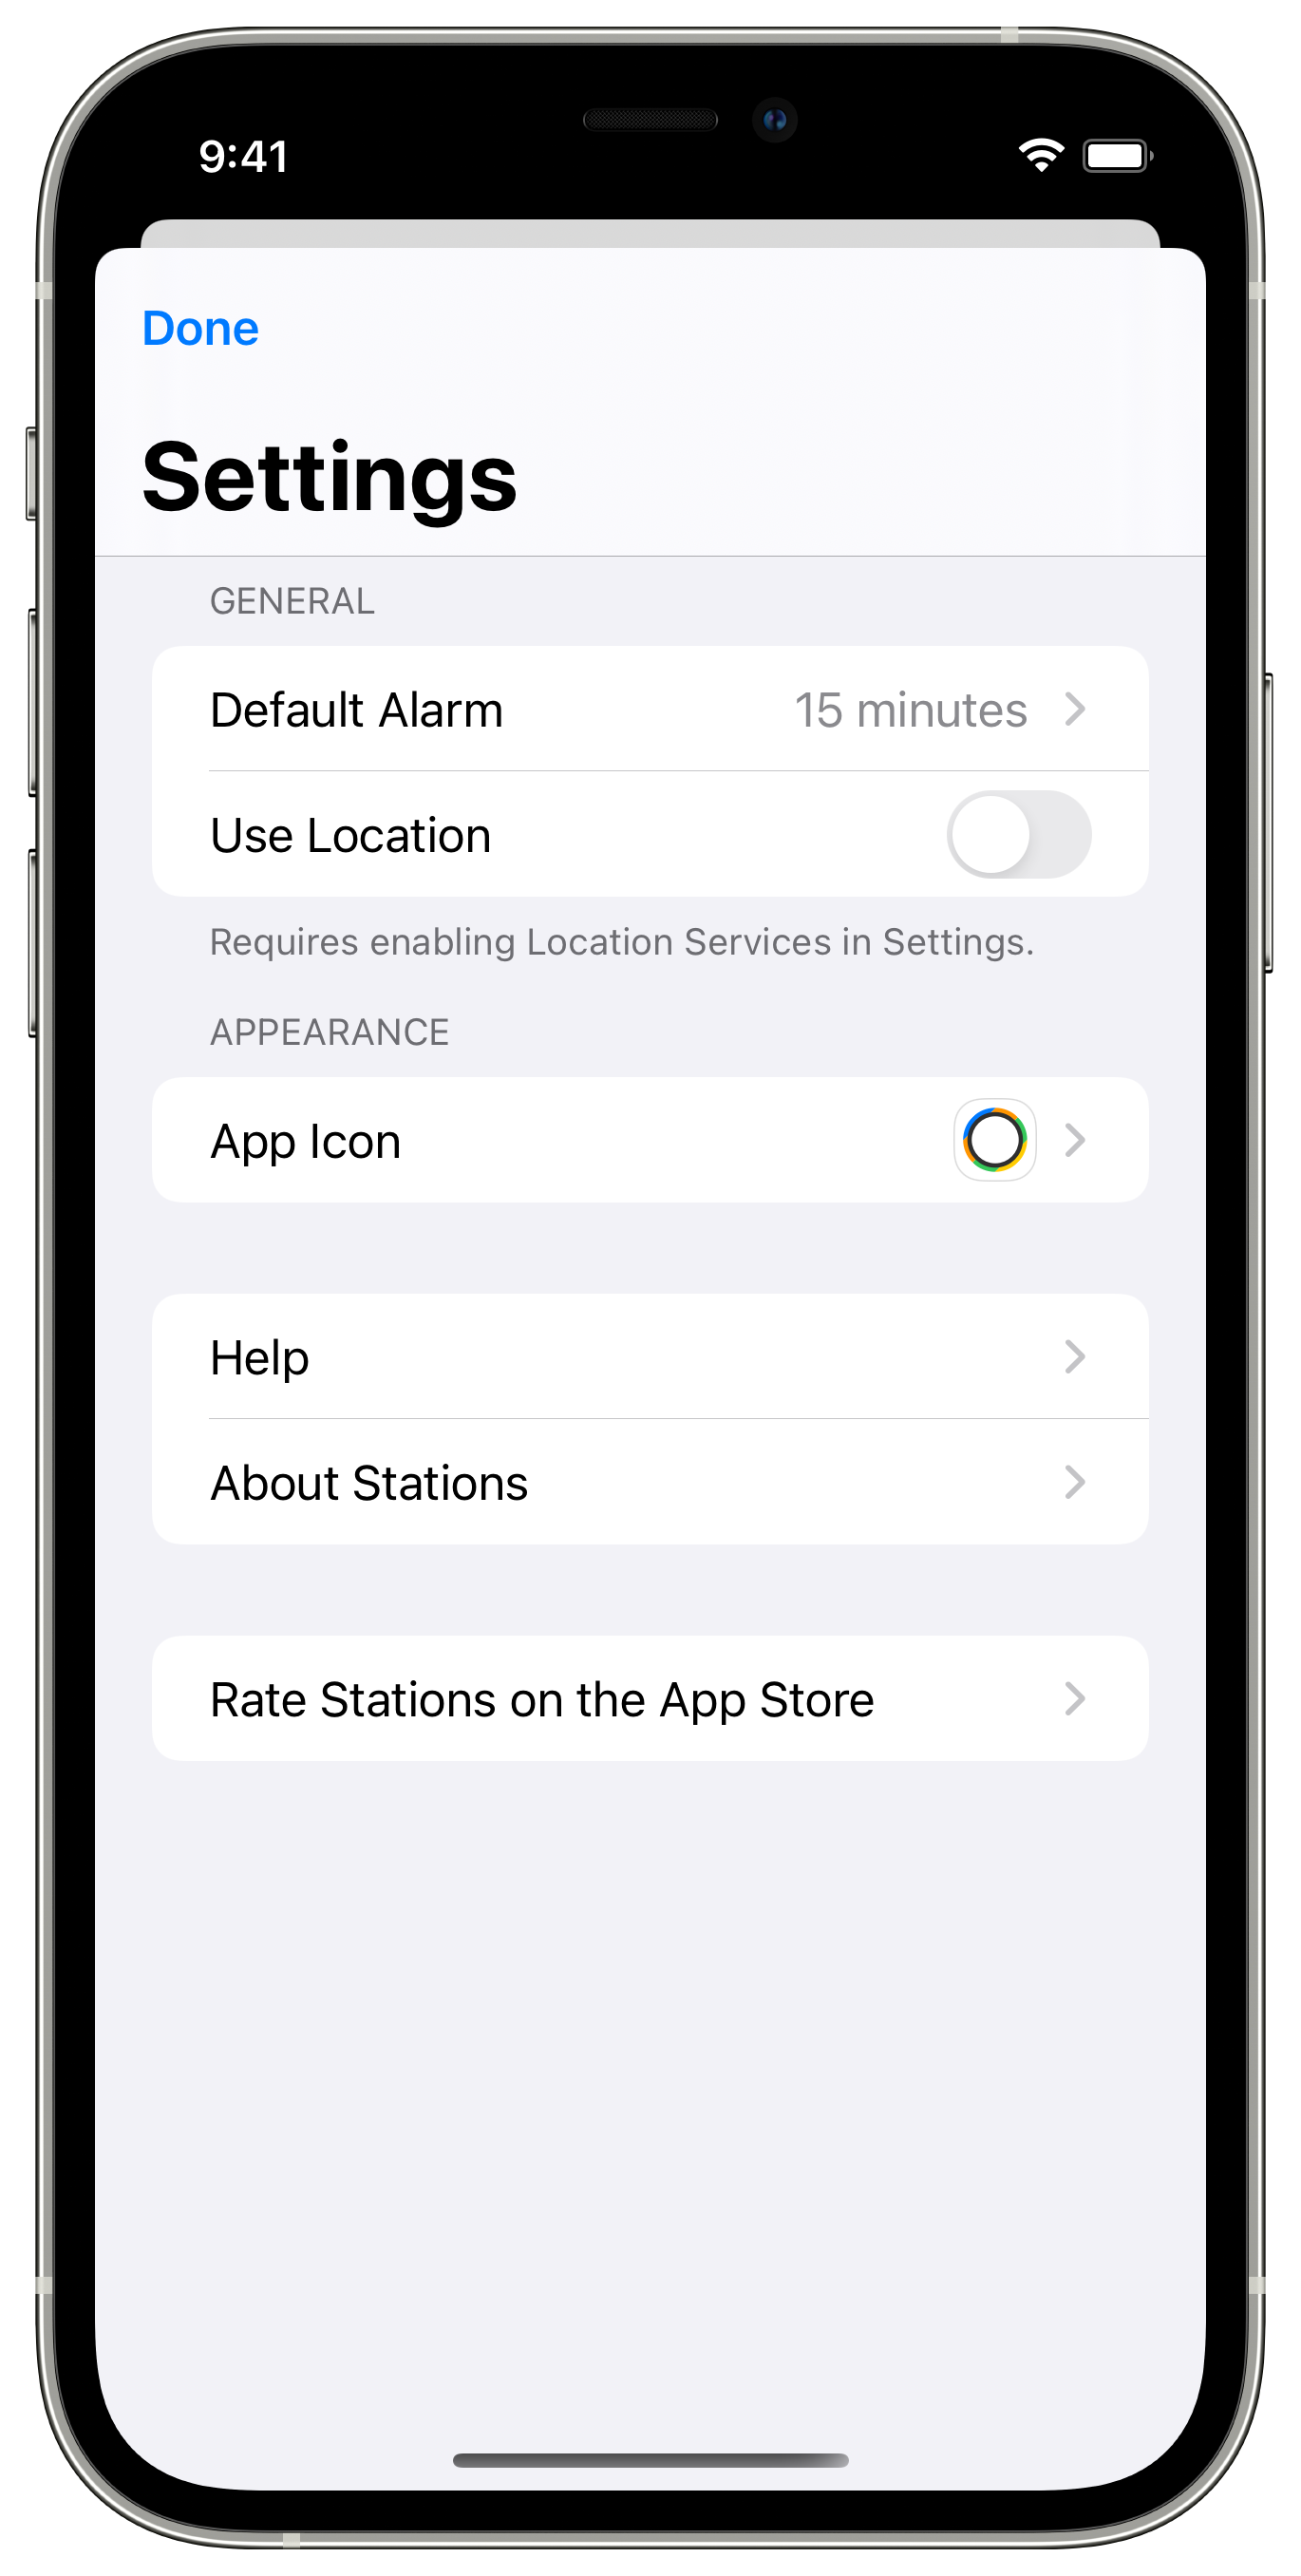 Screenshot: App settings shown.